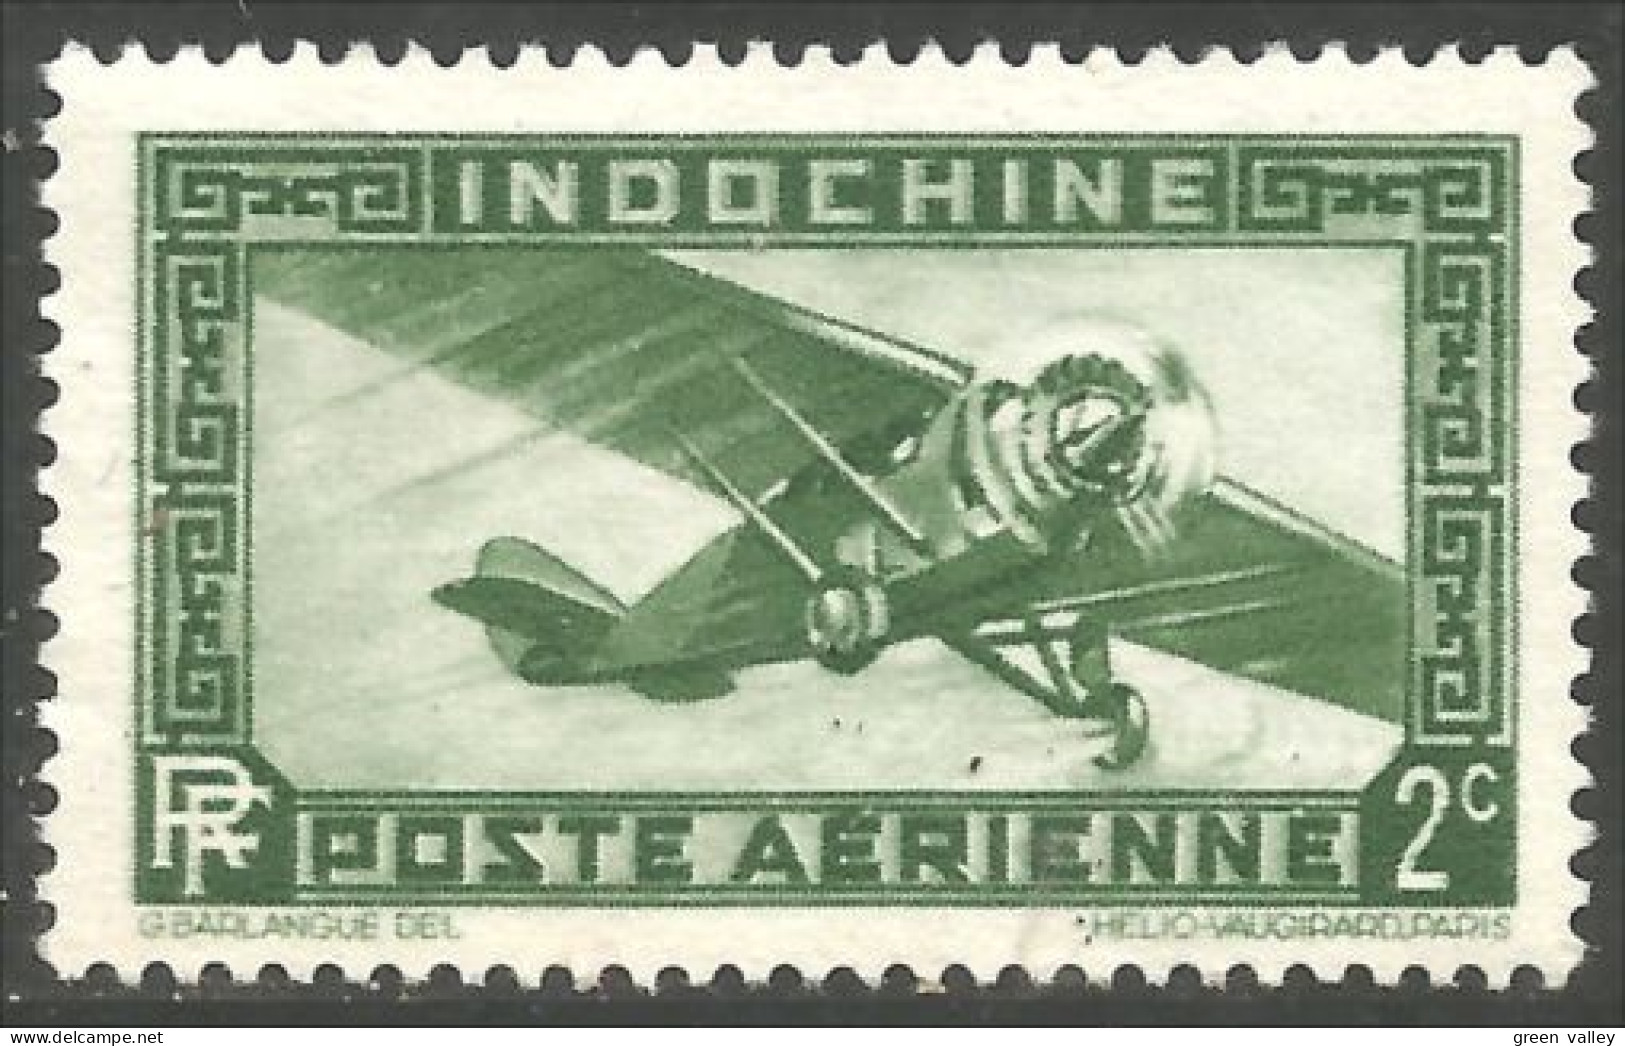 379 Indochine 1933 Avion Airplane Flugzeug Aereo No Gum (f3-CHI-121a) - Ongebruikt